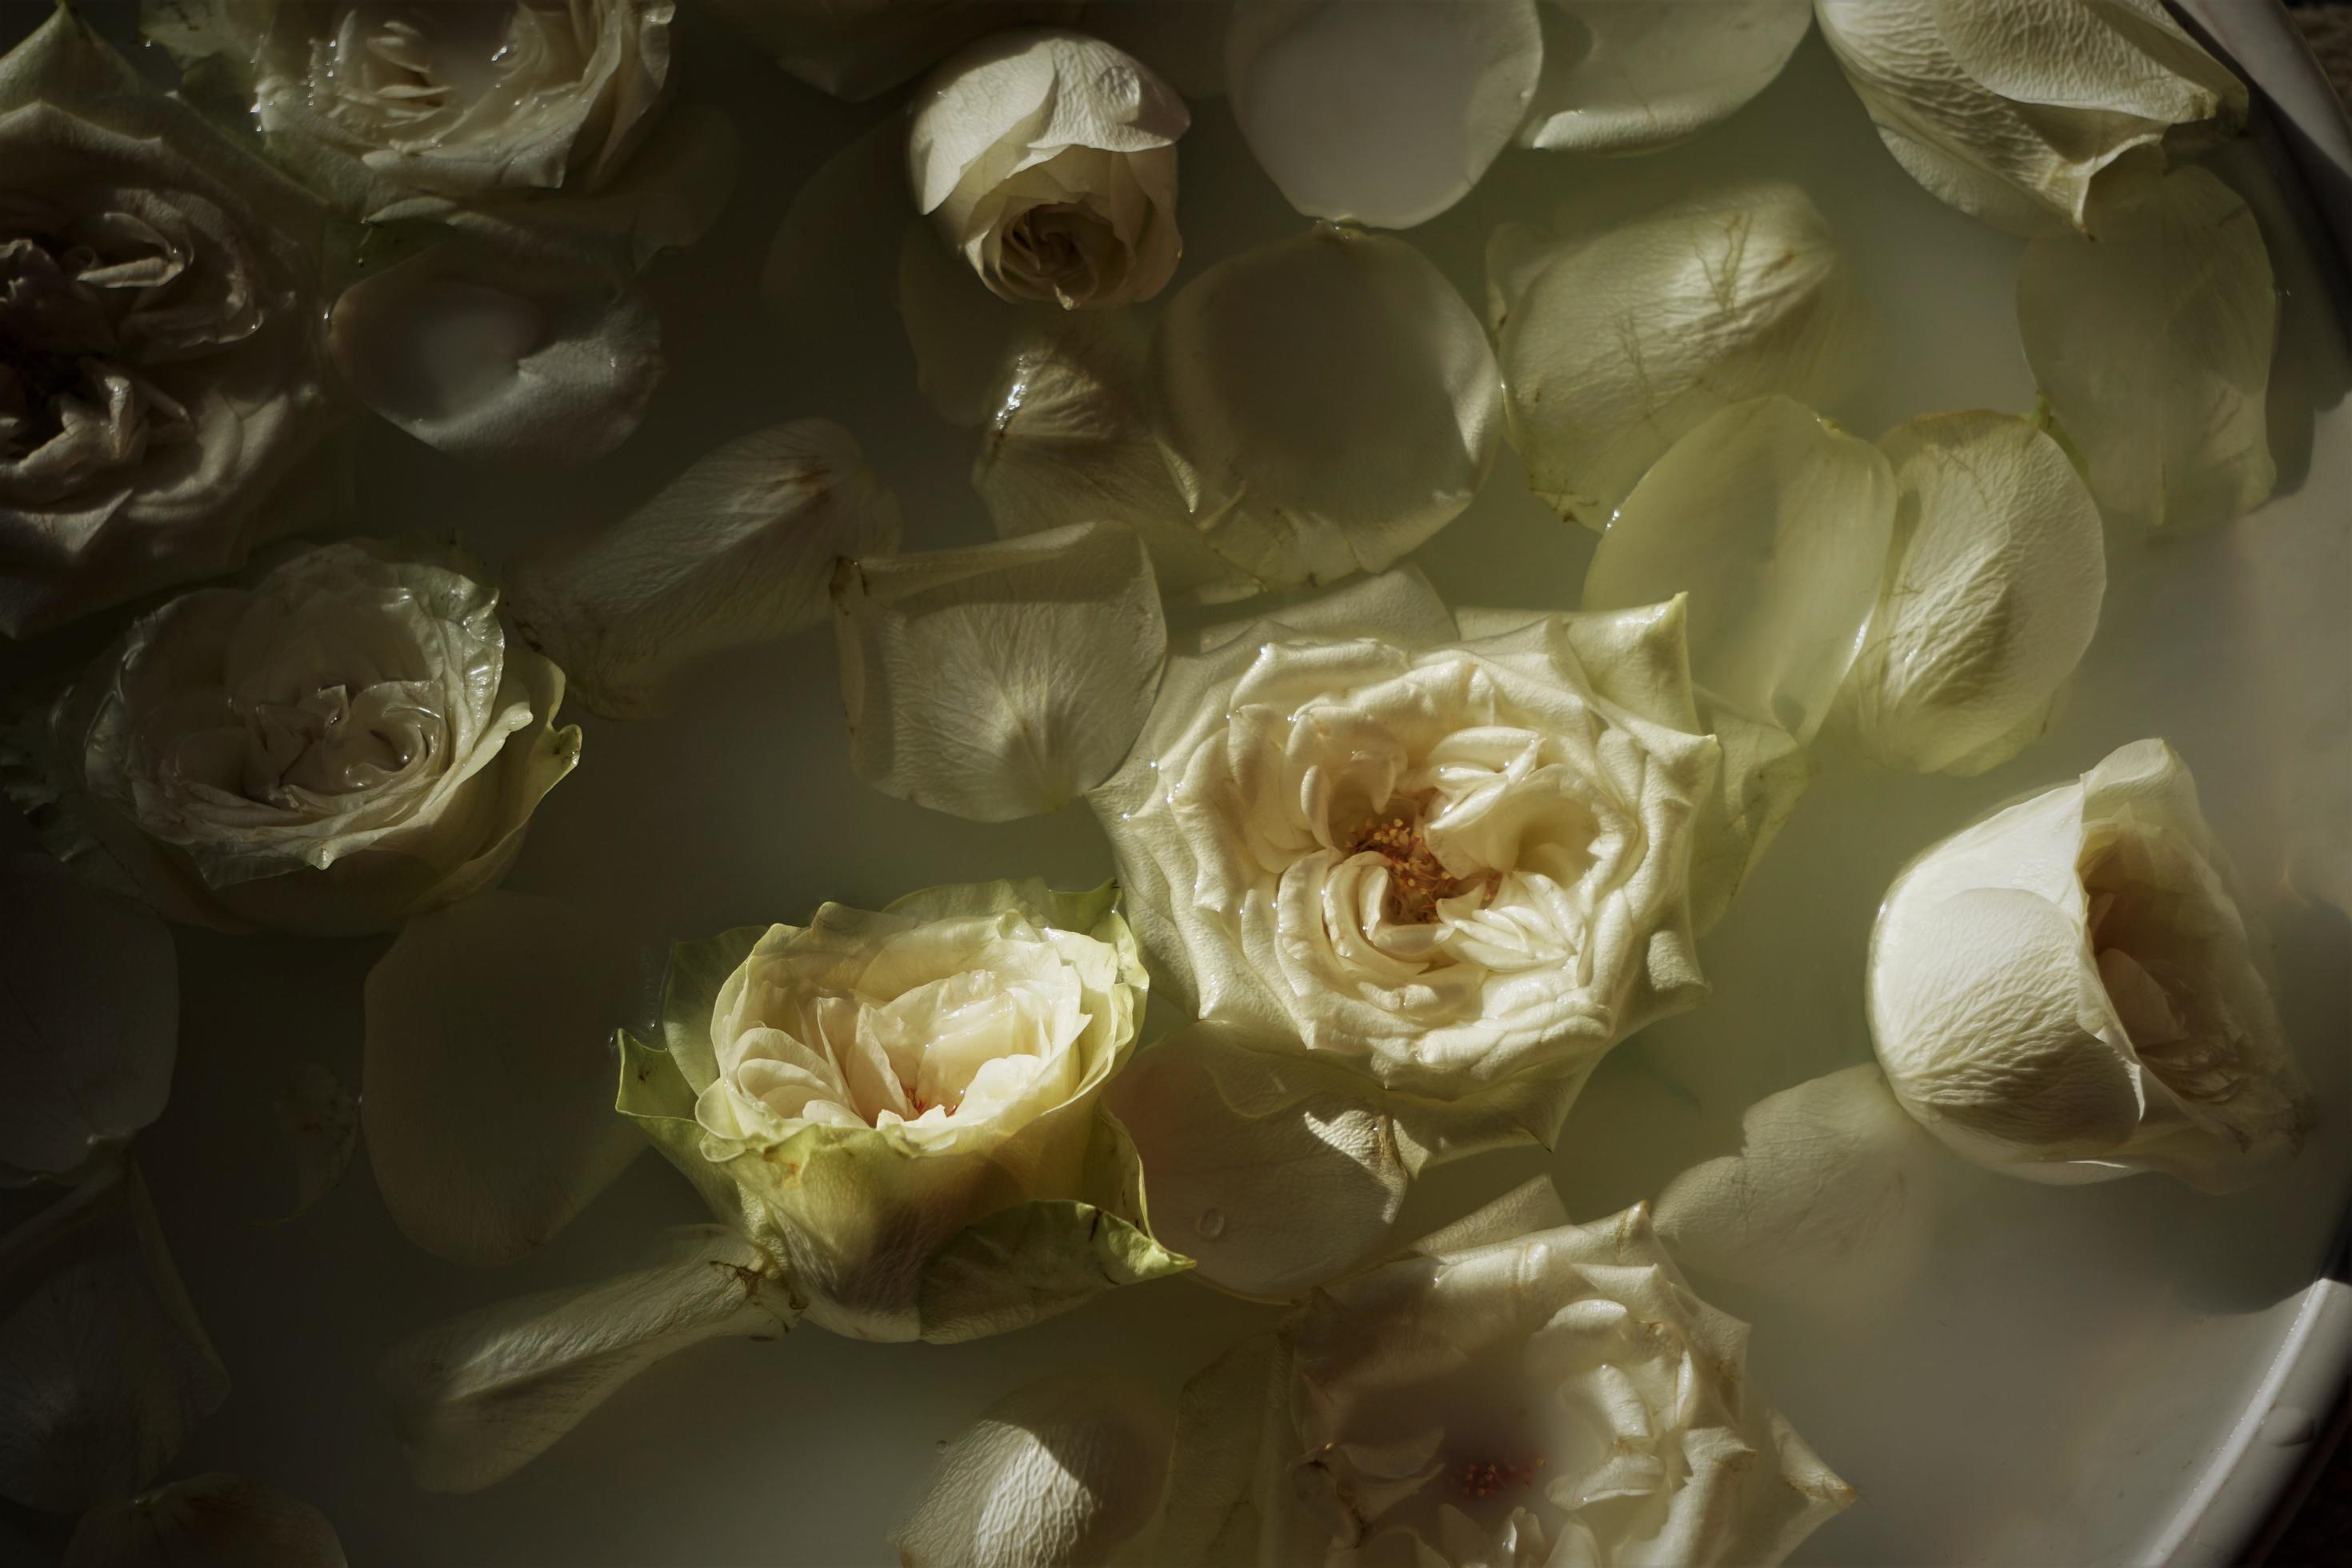  Weiße Rosen Hintergrundbild 2940x1960. Schönes Fußbad. Wasser Mit Milch Und Weißen Rosen. 3534206 Stock Photo Bei Vecteezy